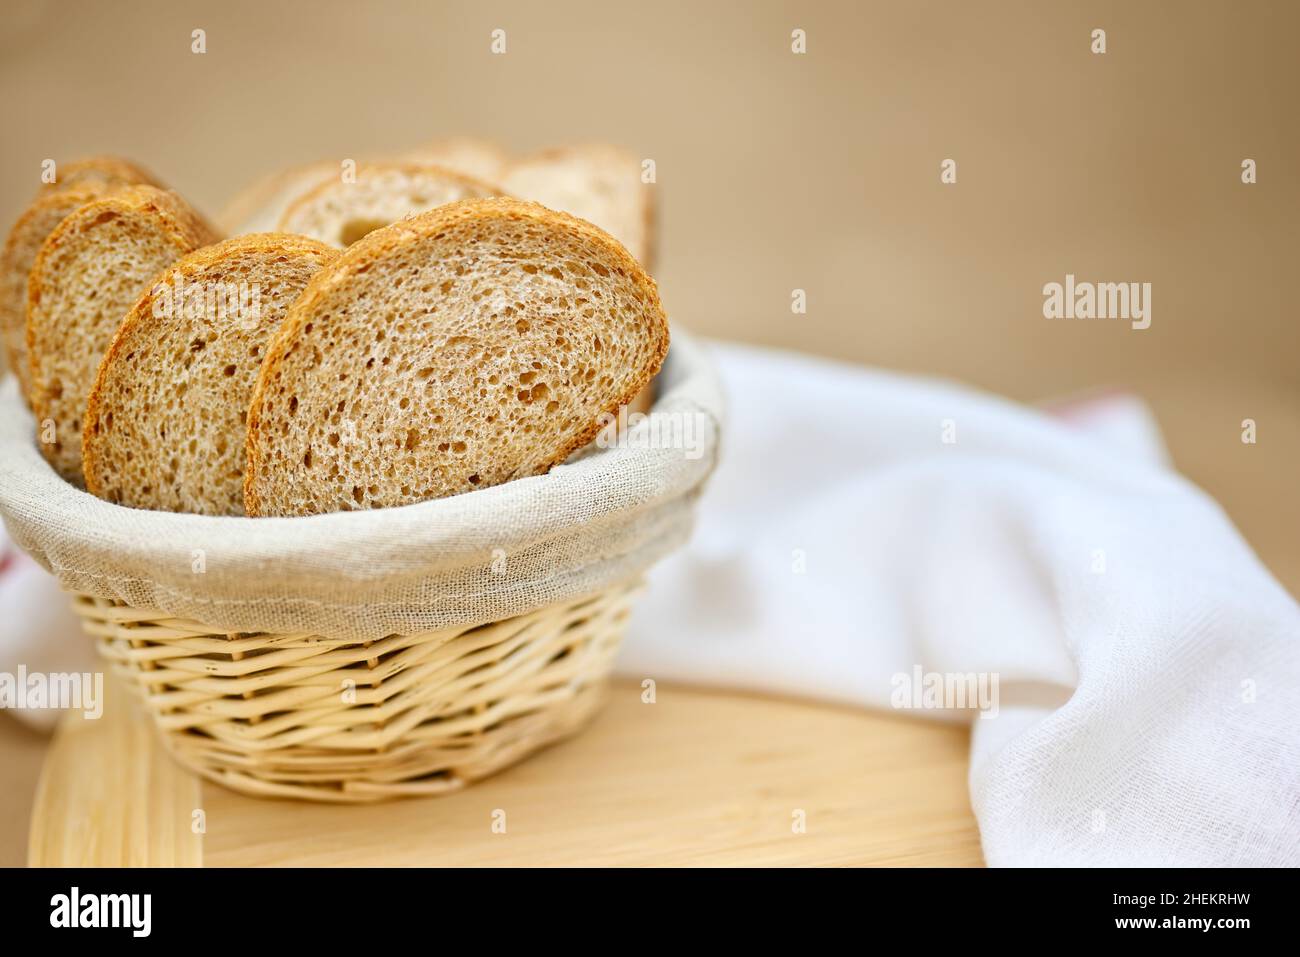 Pane fresco di cereali in un cestino di vimini. Il pane viene affettato.  Sfondo beige, asse di legno, panno di lino in un cestino, tisana bianca sul  tavolo Foto stock - Alamy